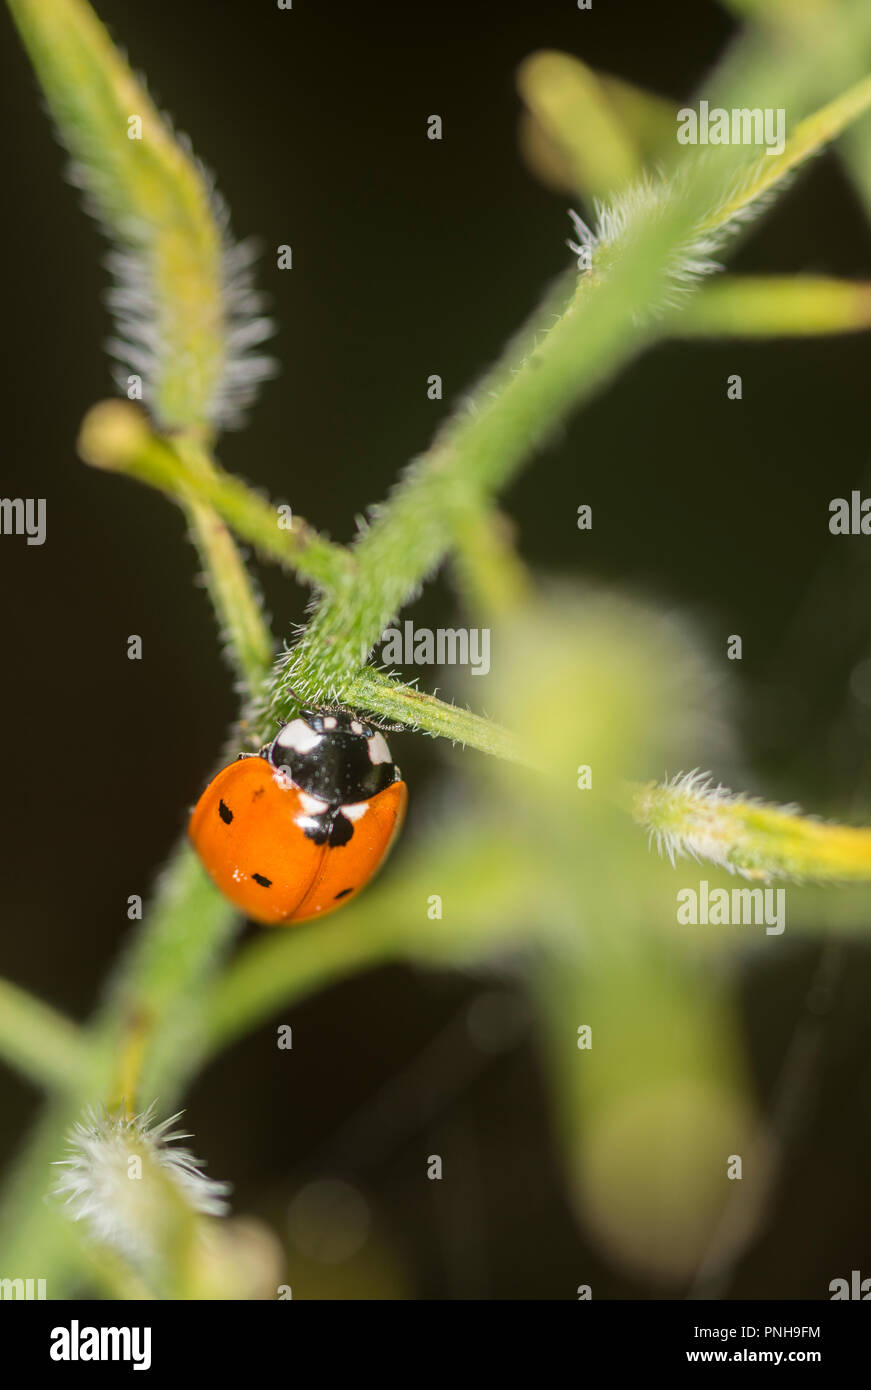 Ladybug crawling up the stem of a plant Stock Photo